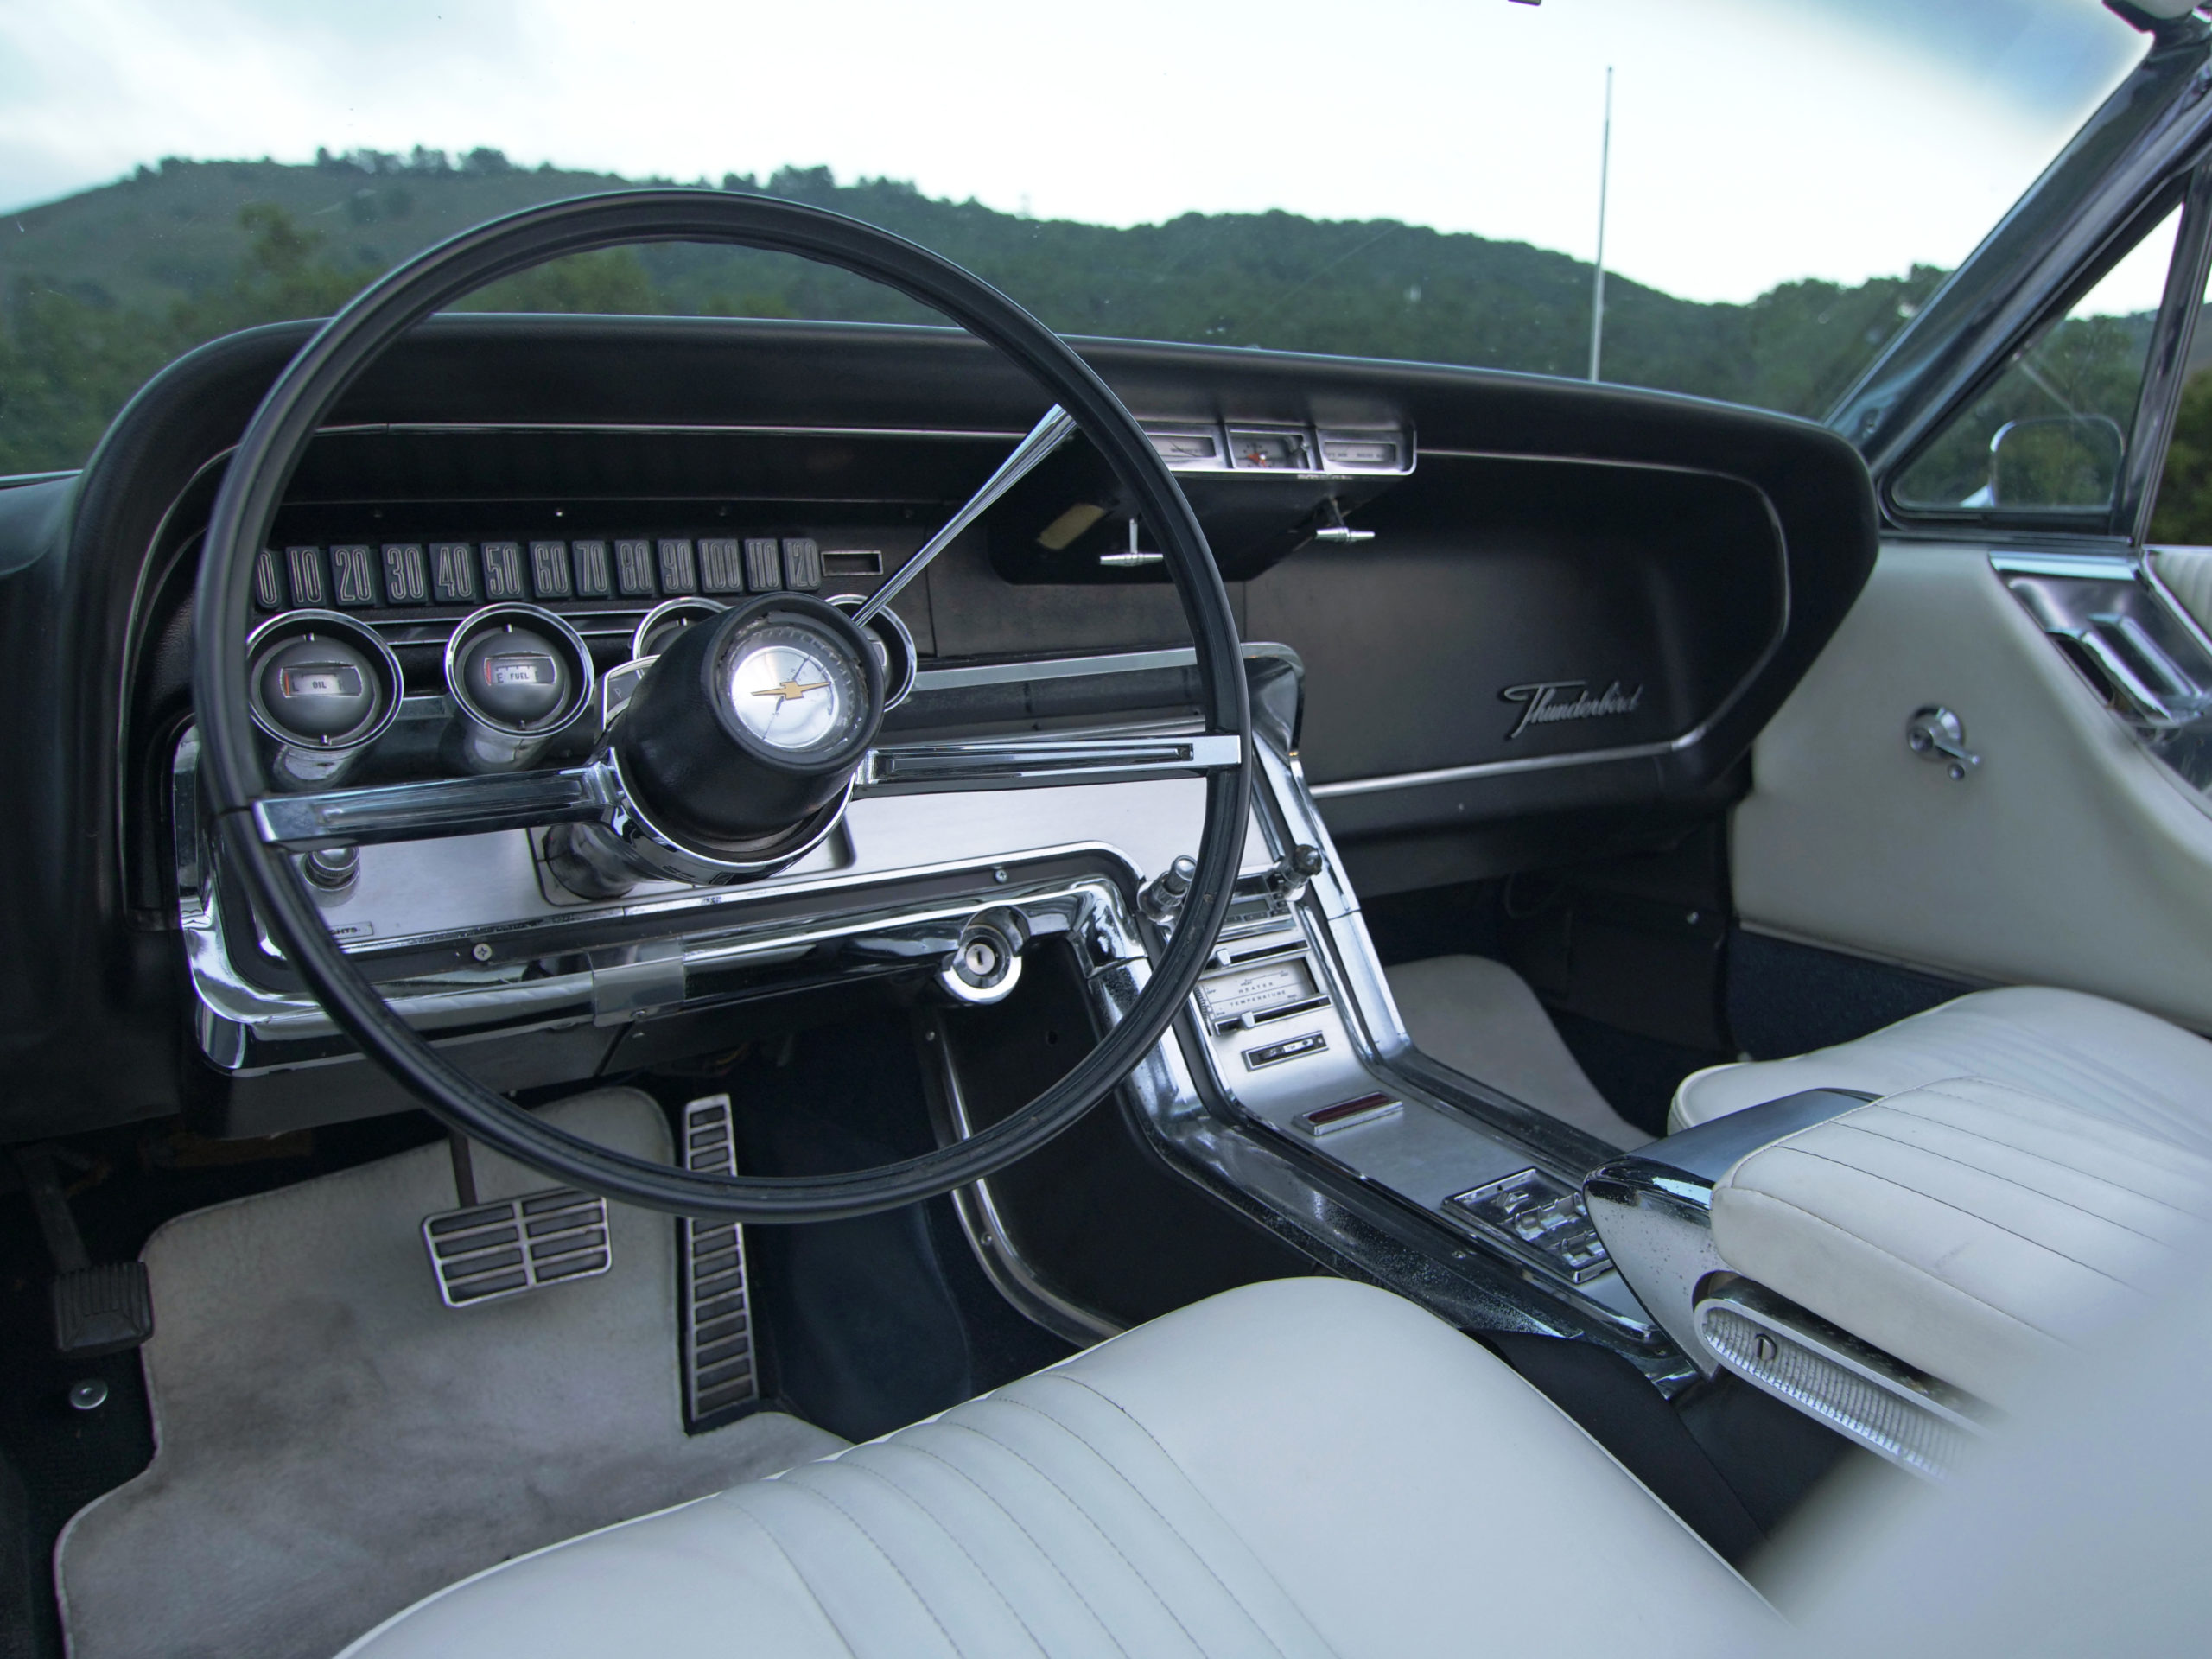 1964 ford thunderbird interior